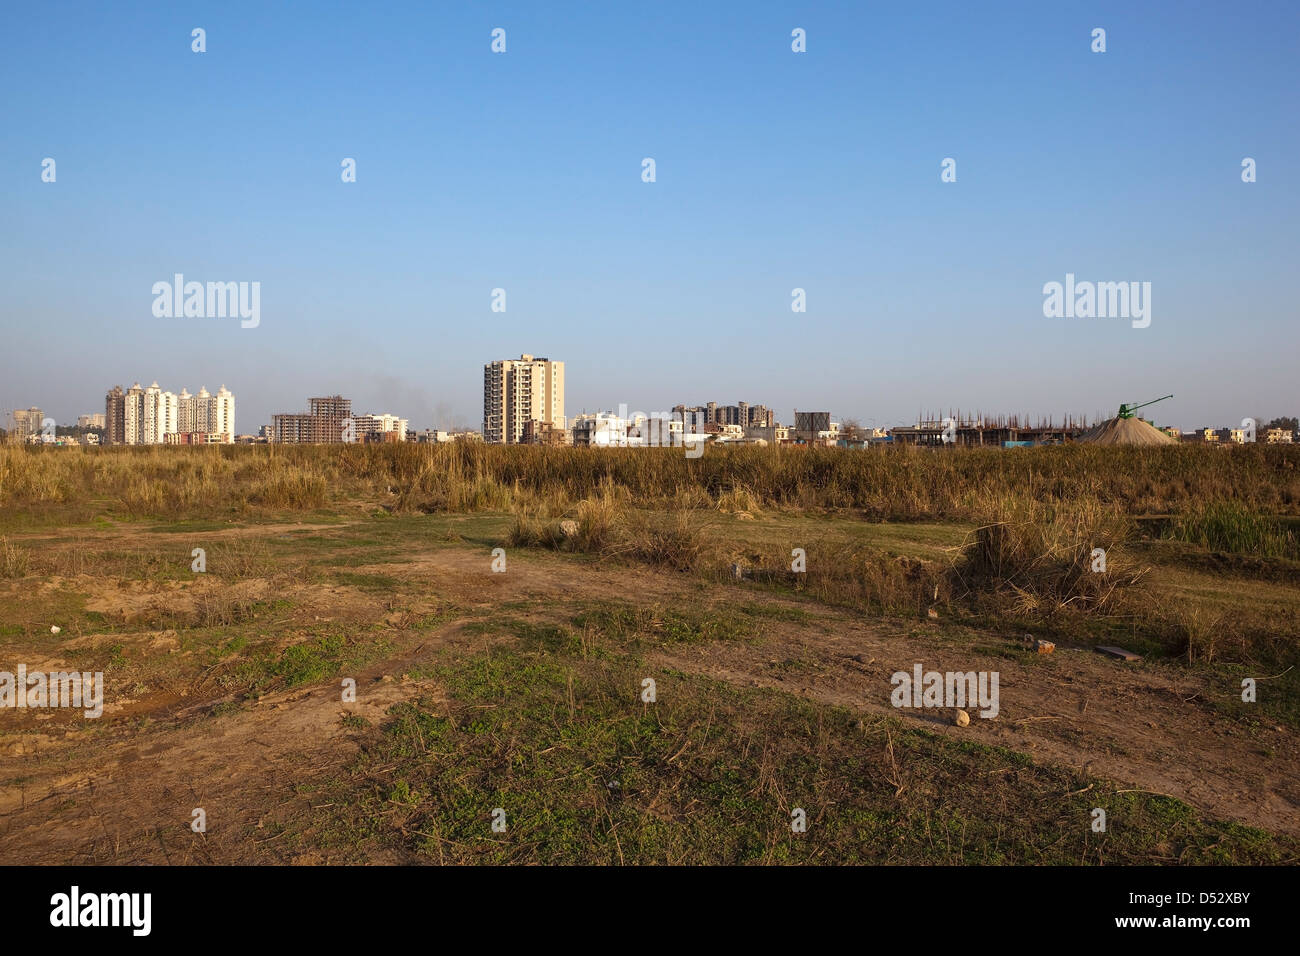 Stadtentwicklung auf ehemaligen landwirtschaftlichen Flächen am Stadtrand von Chandigarh im Bezirk Mohali, Punjab, Indien Stockfoto